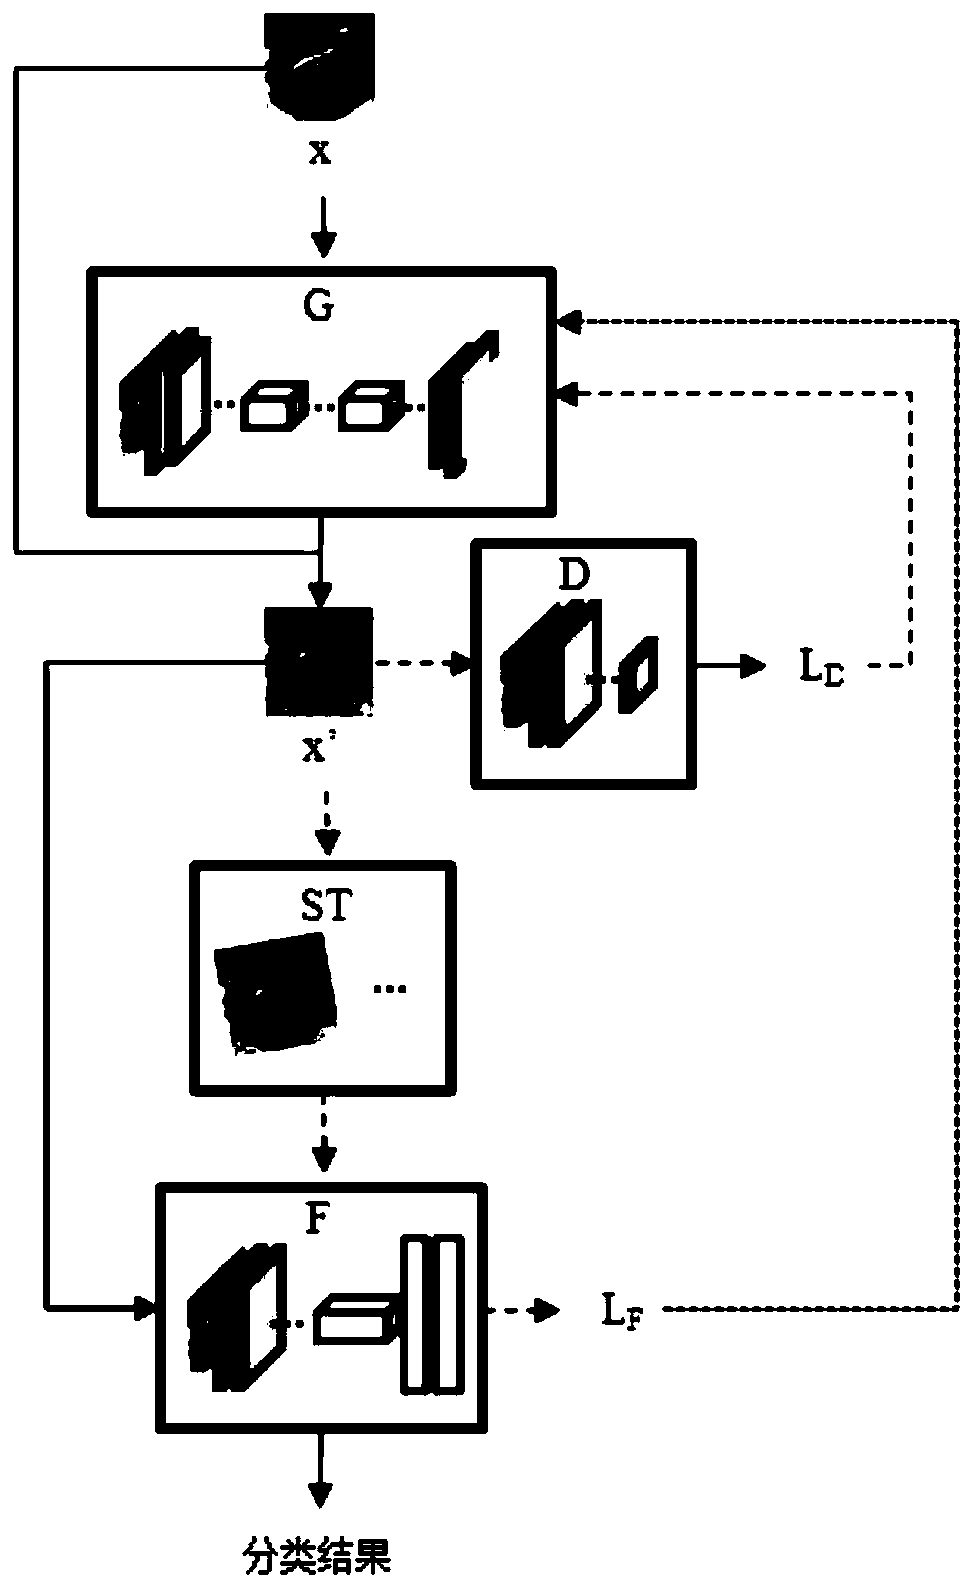 Adversarial sample generation method based on generative adversarial network